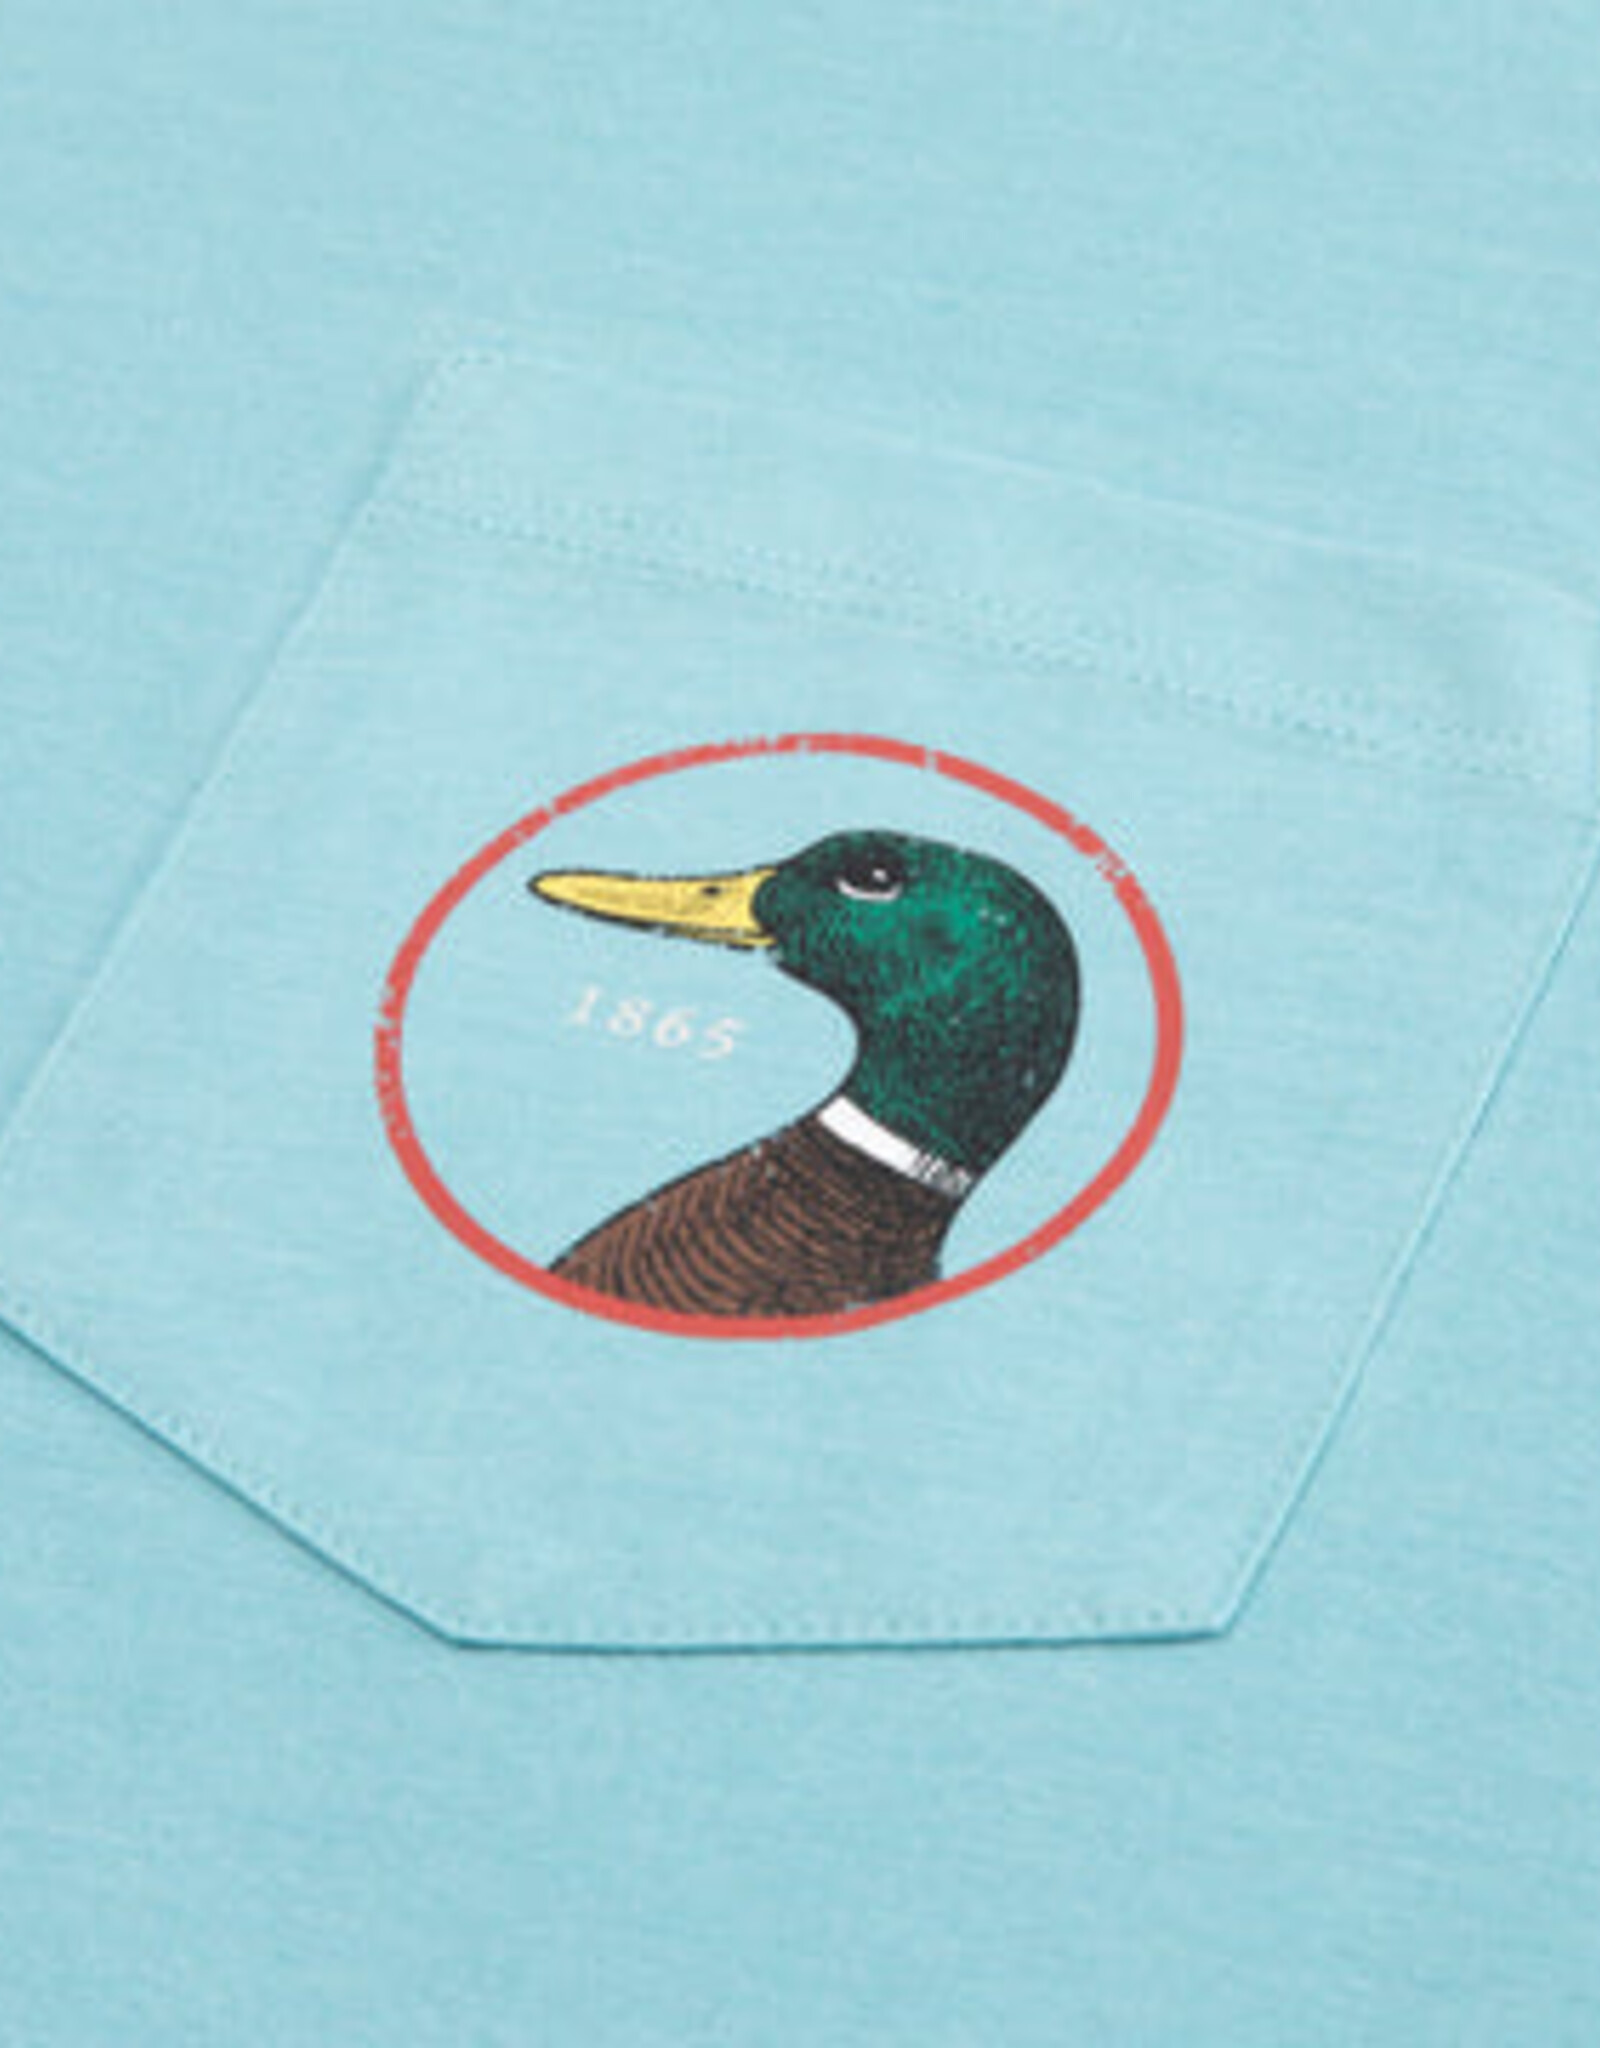 Duckhead Duckhead Logo T-Shirt SS